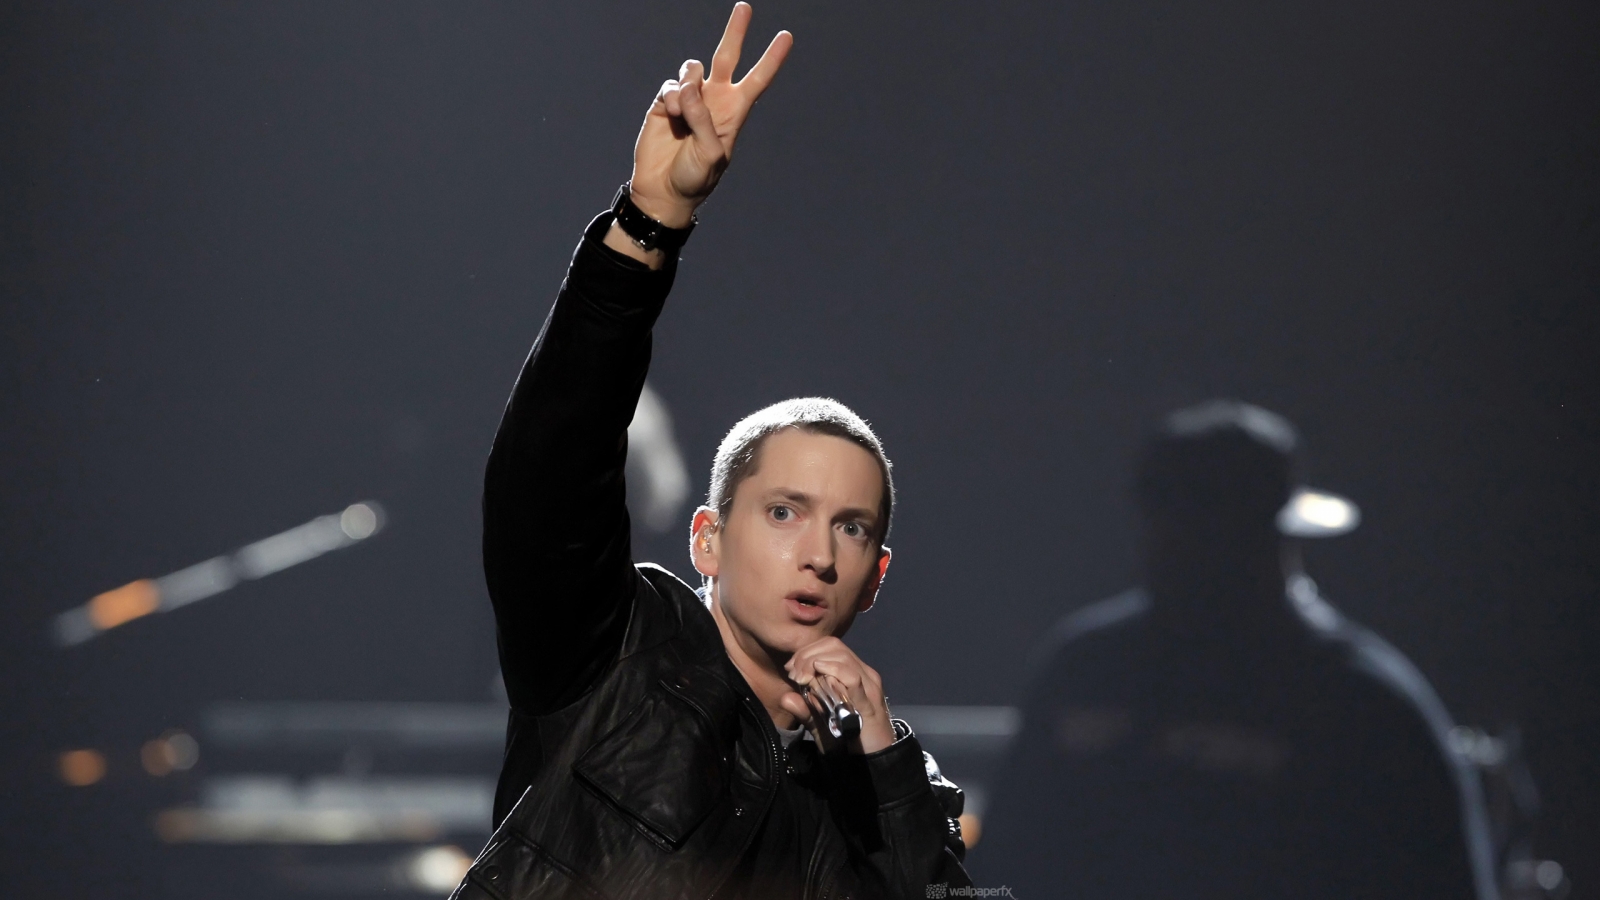 Eminem Peace for 1600 x 900 HDTV resolution